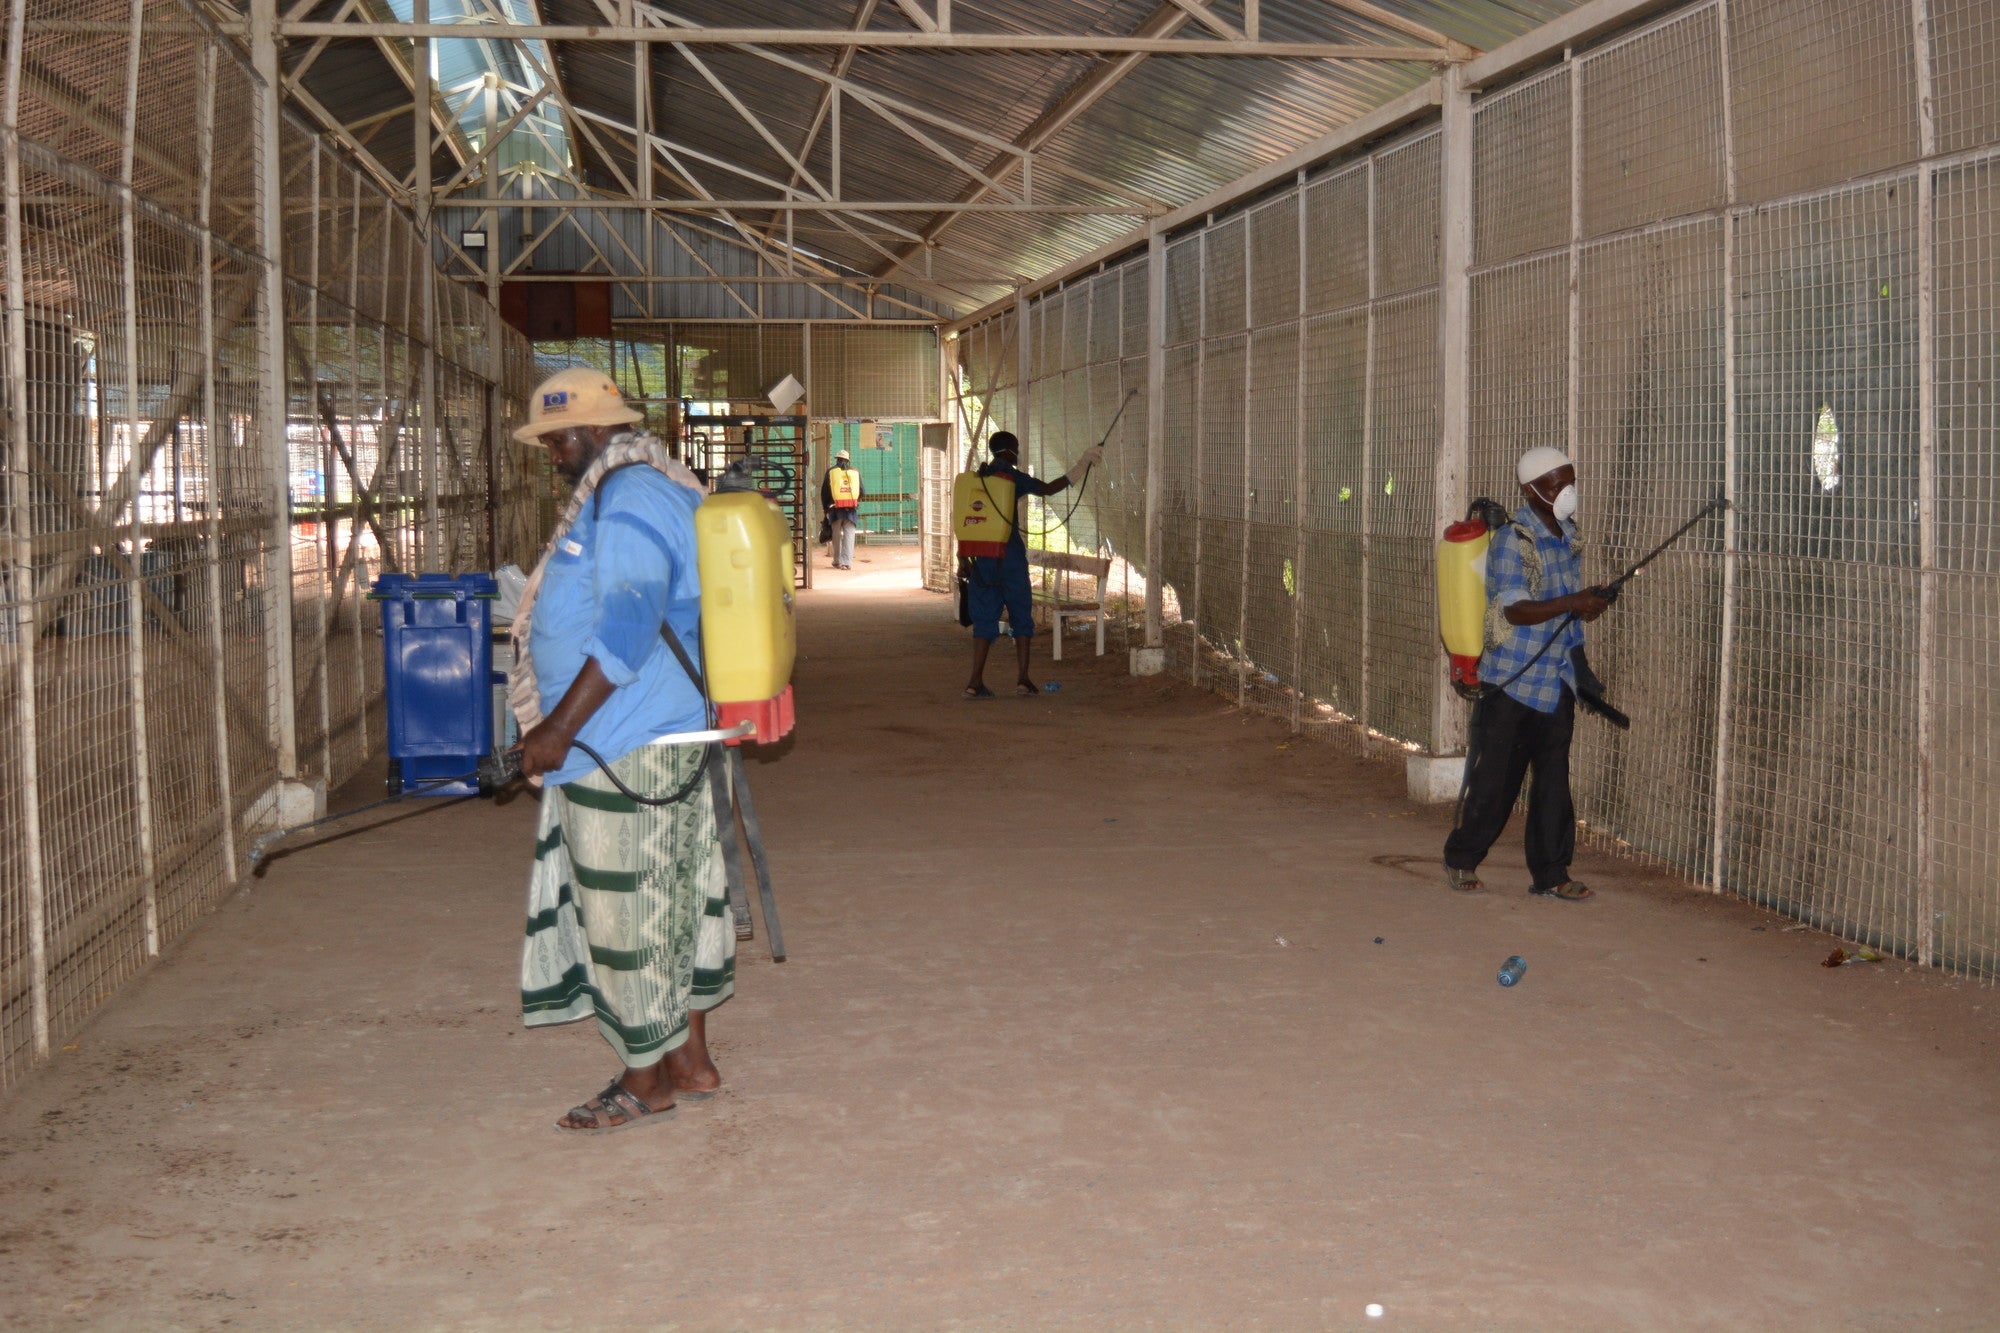 No final de abril, a CARE havia alcançado quase todos os habitantes de Dadaab, bem como as comunidades anfitriãs com o abastecimento de água tão necessário. A CARE também distribuiu sabonete e ajudou com treinamentos de higiene sobre métodos de lavagem das mãos. Foto da CARE